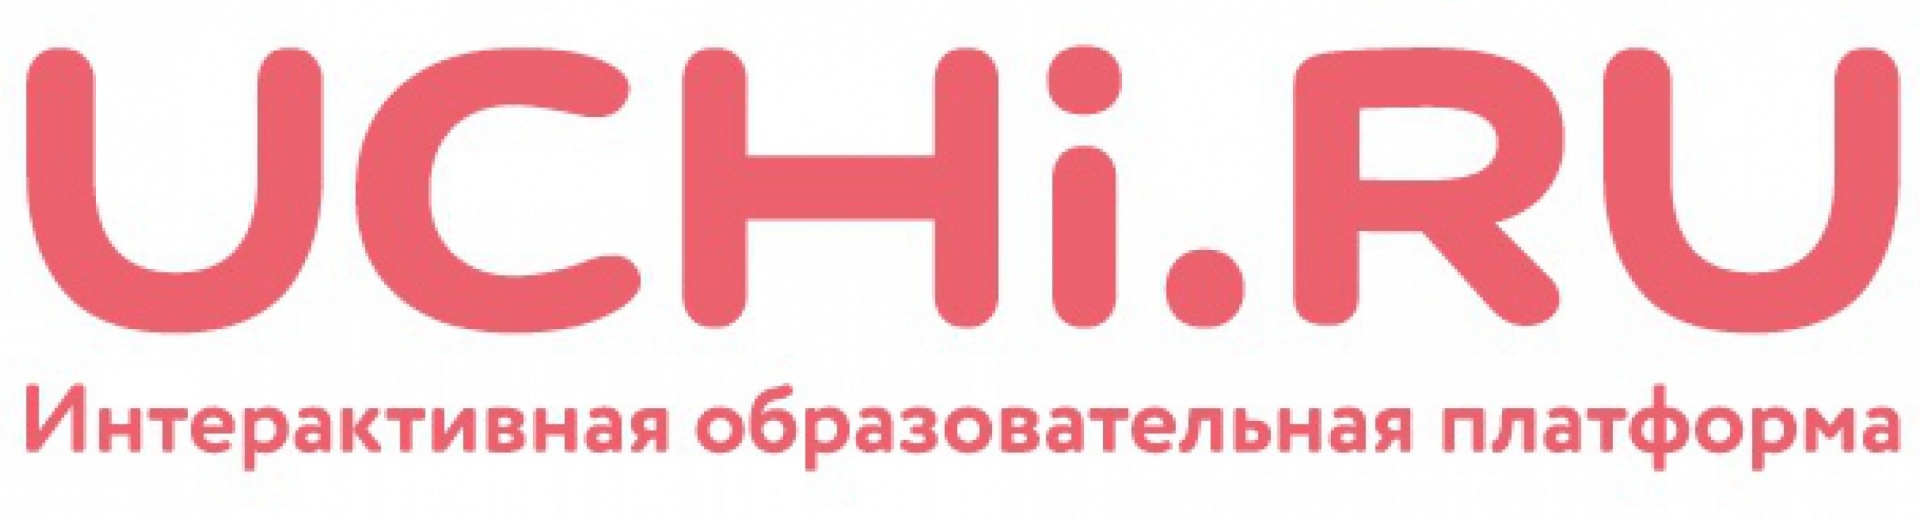 Https uchi 20 ru. Учи ру. Учи ру лого. Логотип сайта учи ру. Логотип Uchi.ru.